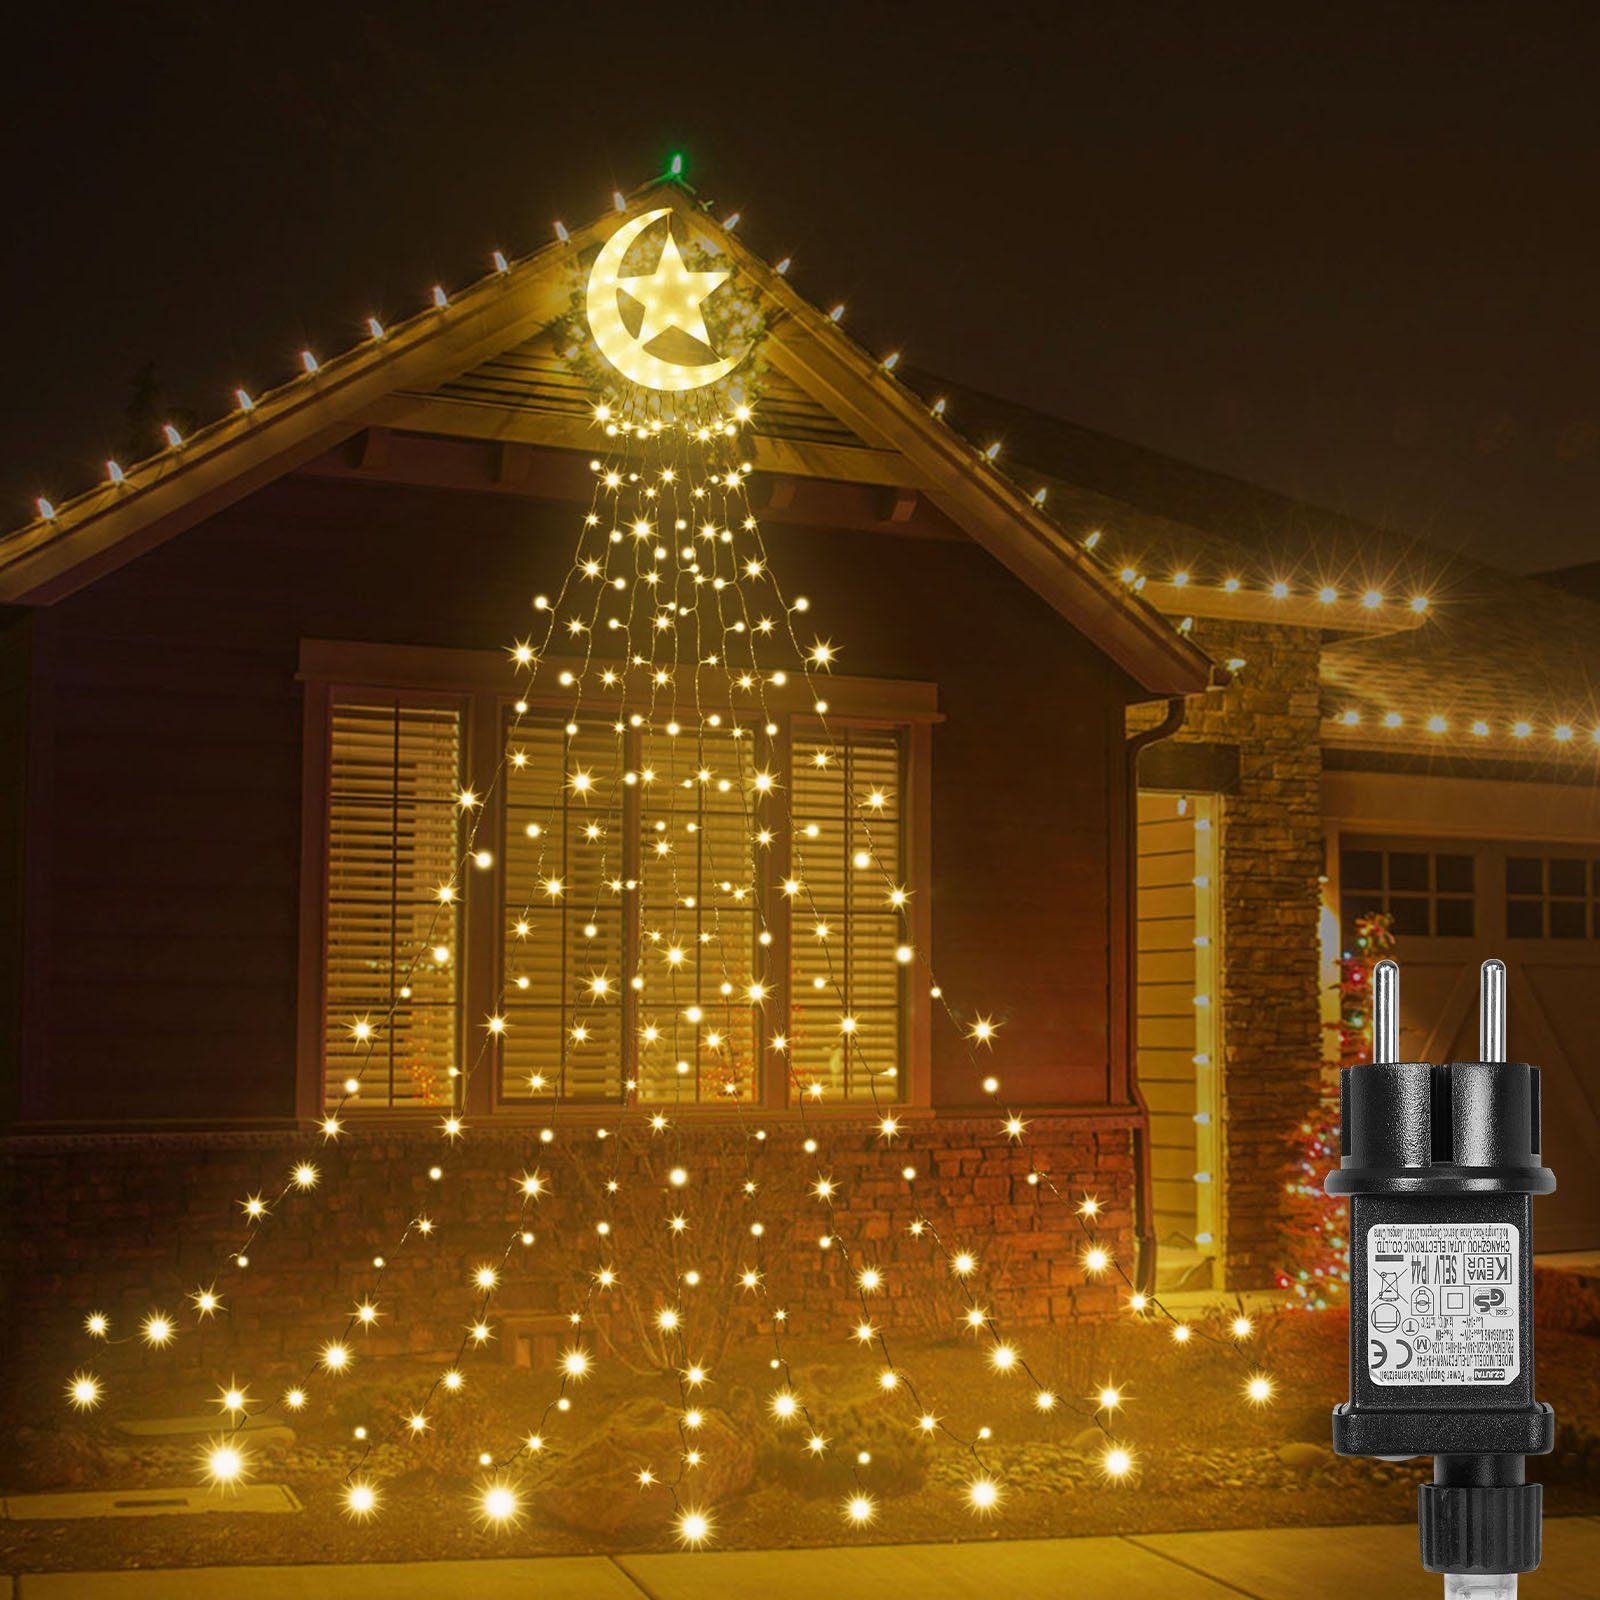 Rosnek LED-Lichtervorhang 8 Modi, wasserdicht, für Dach Innenhof Ramadan Weihnachtsdeko, 350-flammig, Timer;Wasserfall Baum Lichter; mit Topper Mondstern,Speicherfunktion Warmweiß